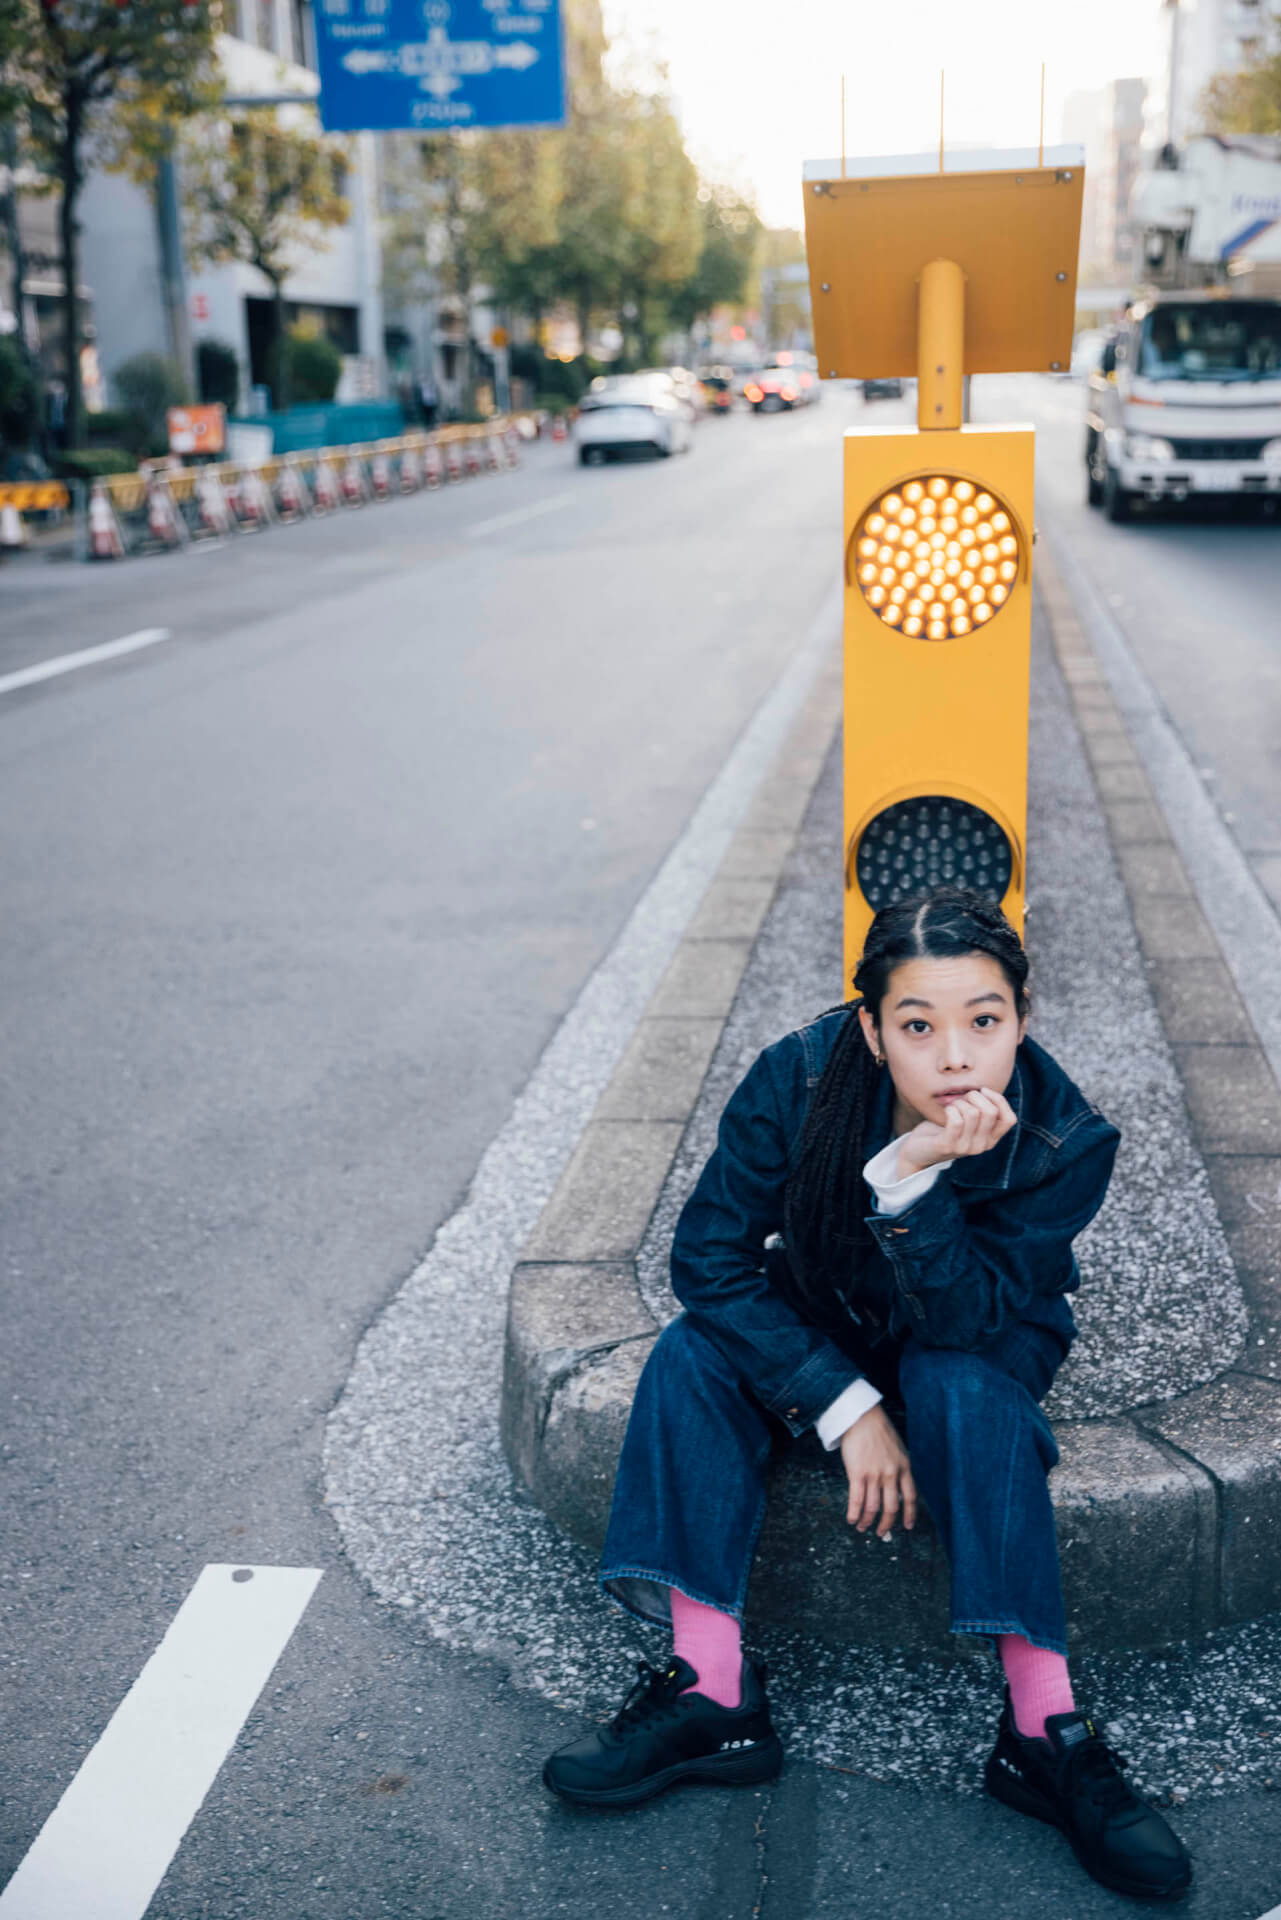 xiangyu × PALLADIUM｜エコなスニーカーから考える“サスティナブル”とファッションの関係性 fashion201221_palladium-016